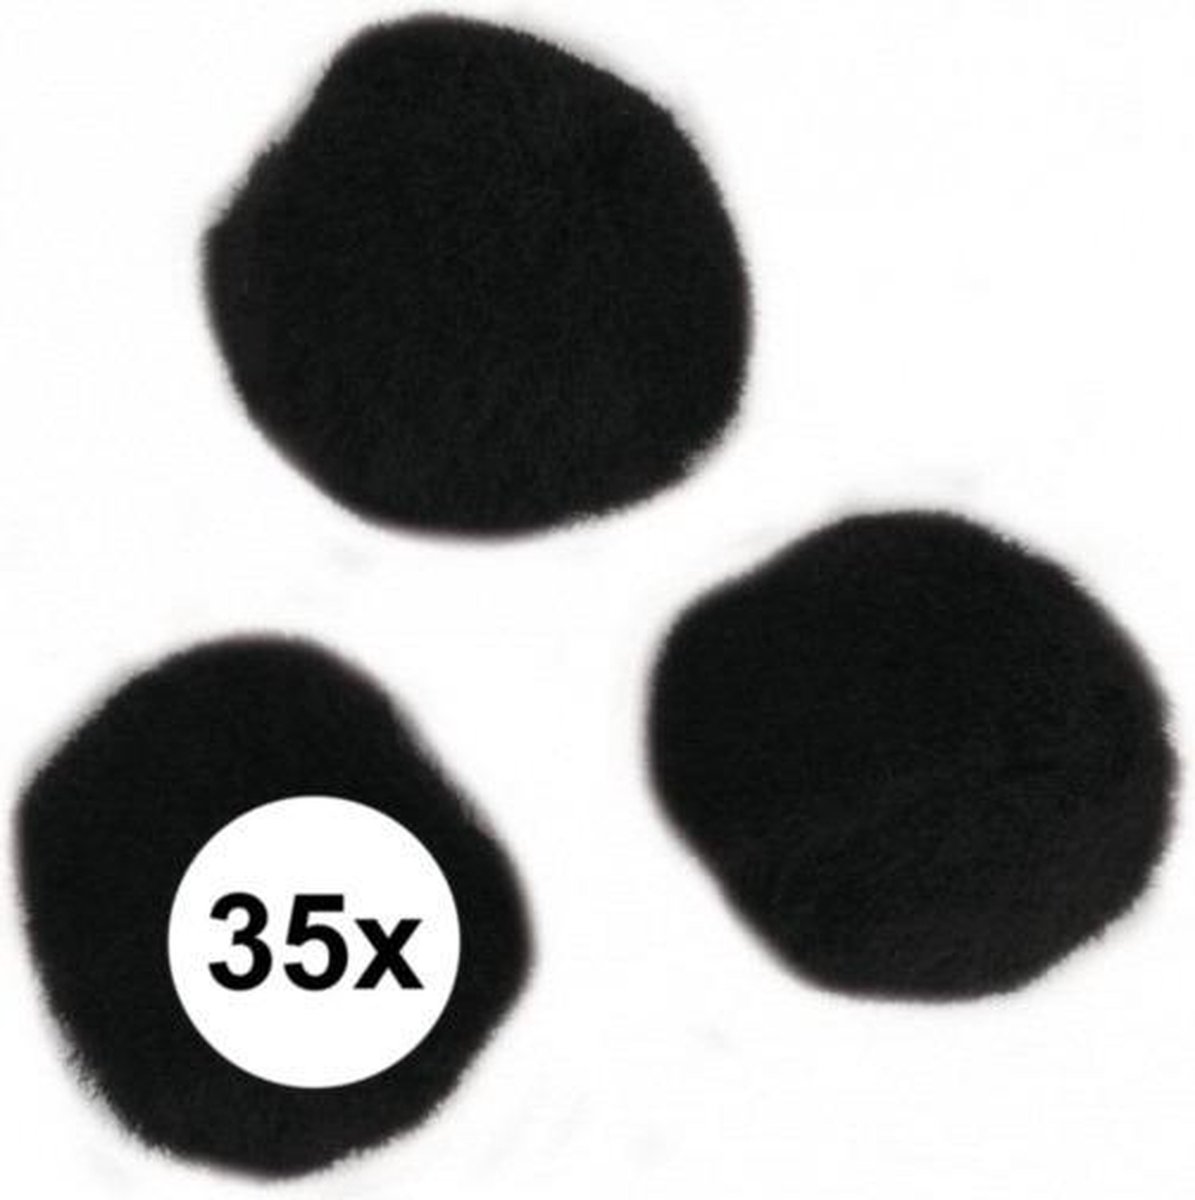 35x stuks knutsel pompons 25 mm zwart hobby knutselen - zelf dieren maken